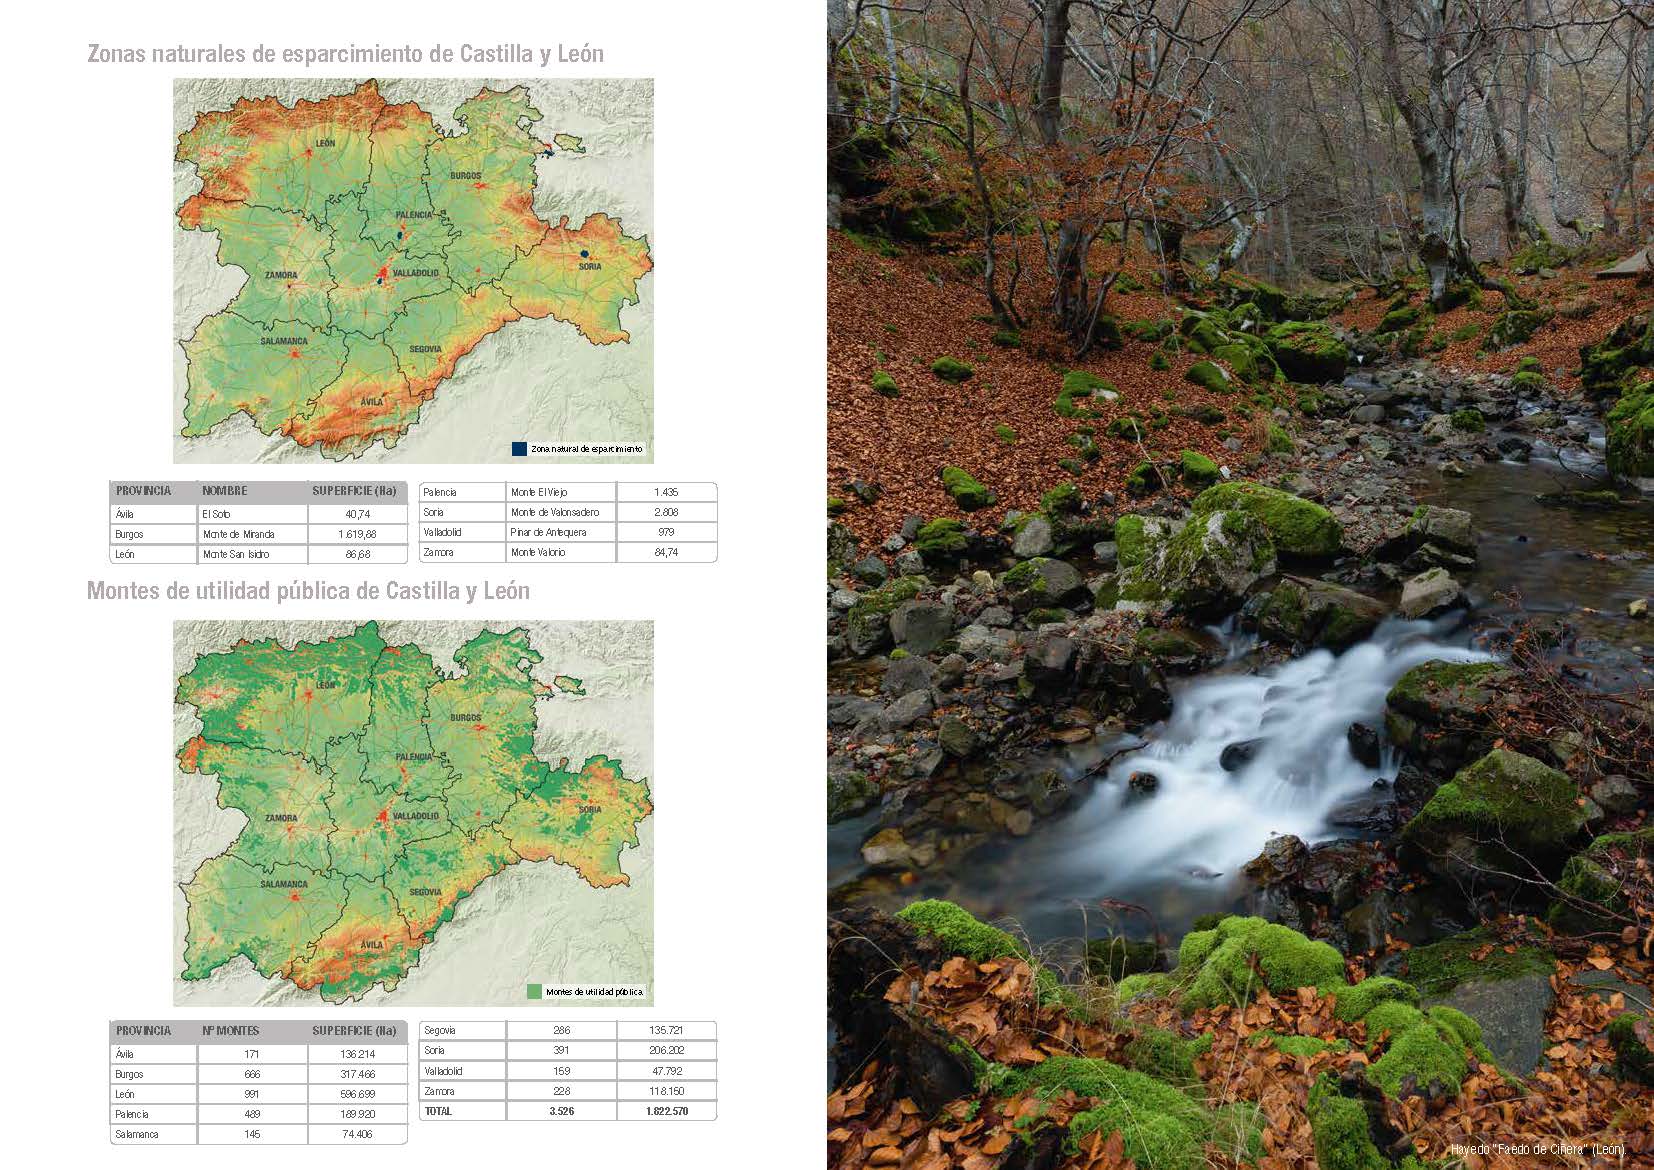 Las áreas naturales protegidas de Castilla y León, recogidas en un libro didáctico y de consulta